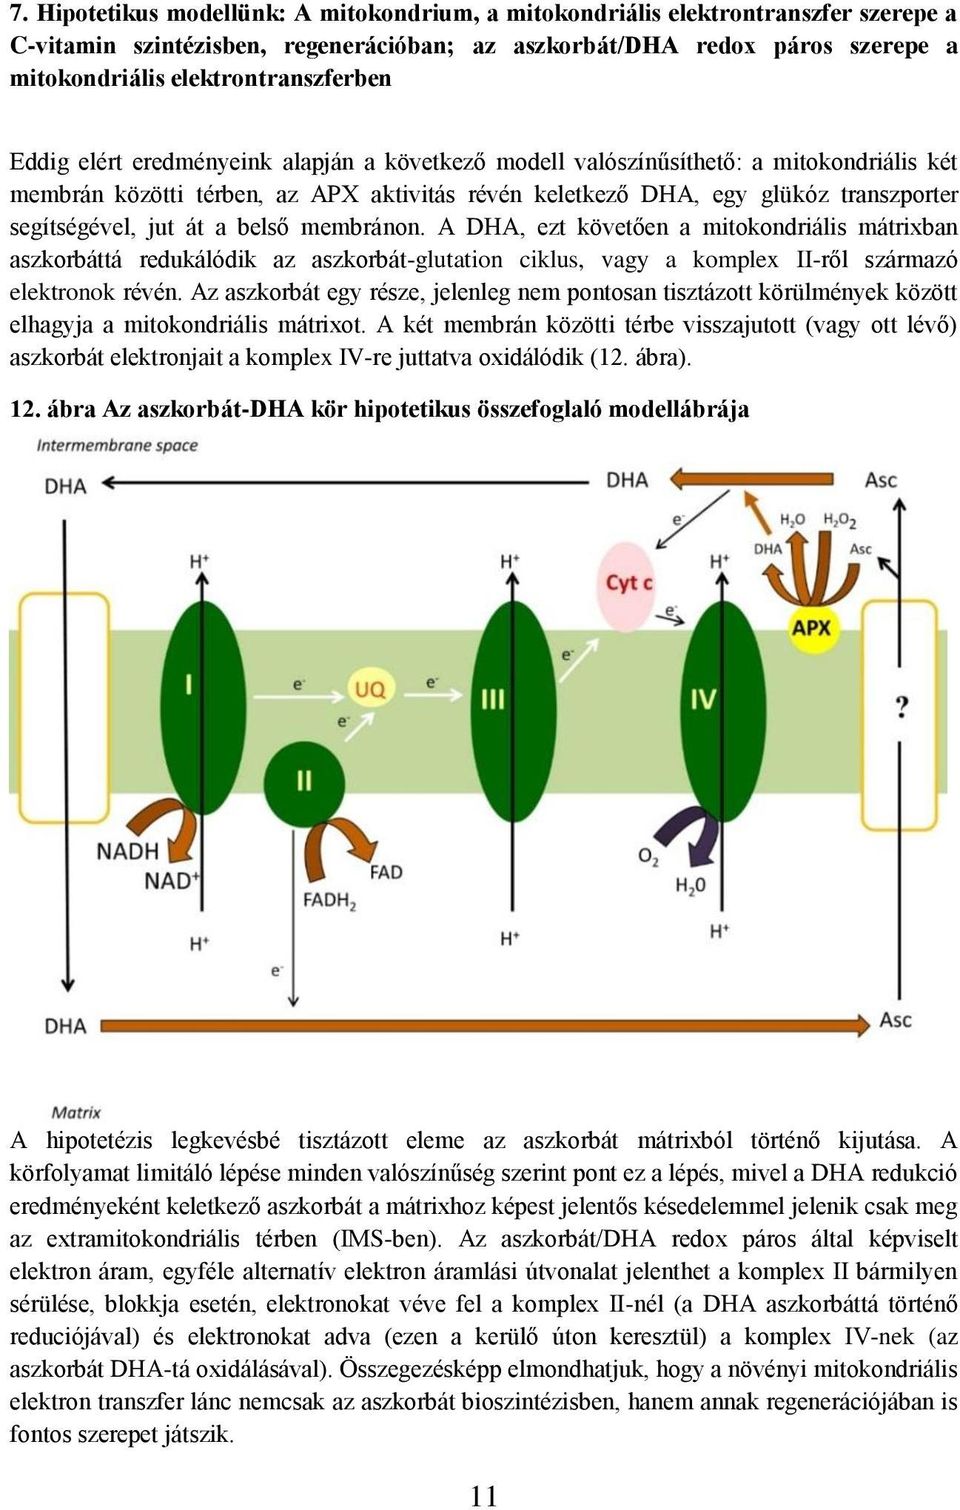 segítségével, jut át a belső membránon. A DHA, ezt követően a mitokondriális mátrixban aszkorbáttá redukálódik az aszkorbát-glutation ciklus, vagy a komplex II-ről származó elektronok révén.